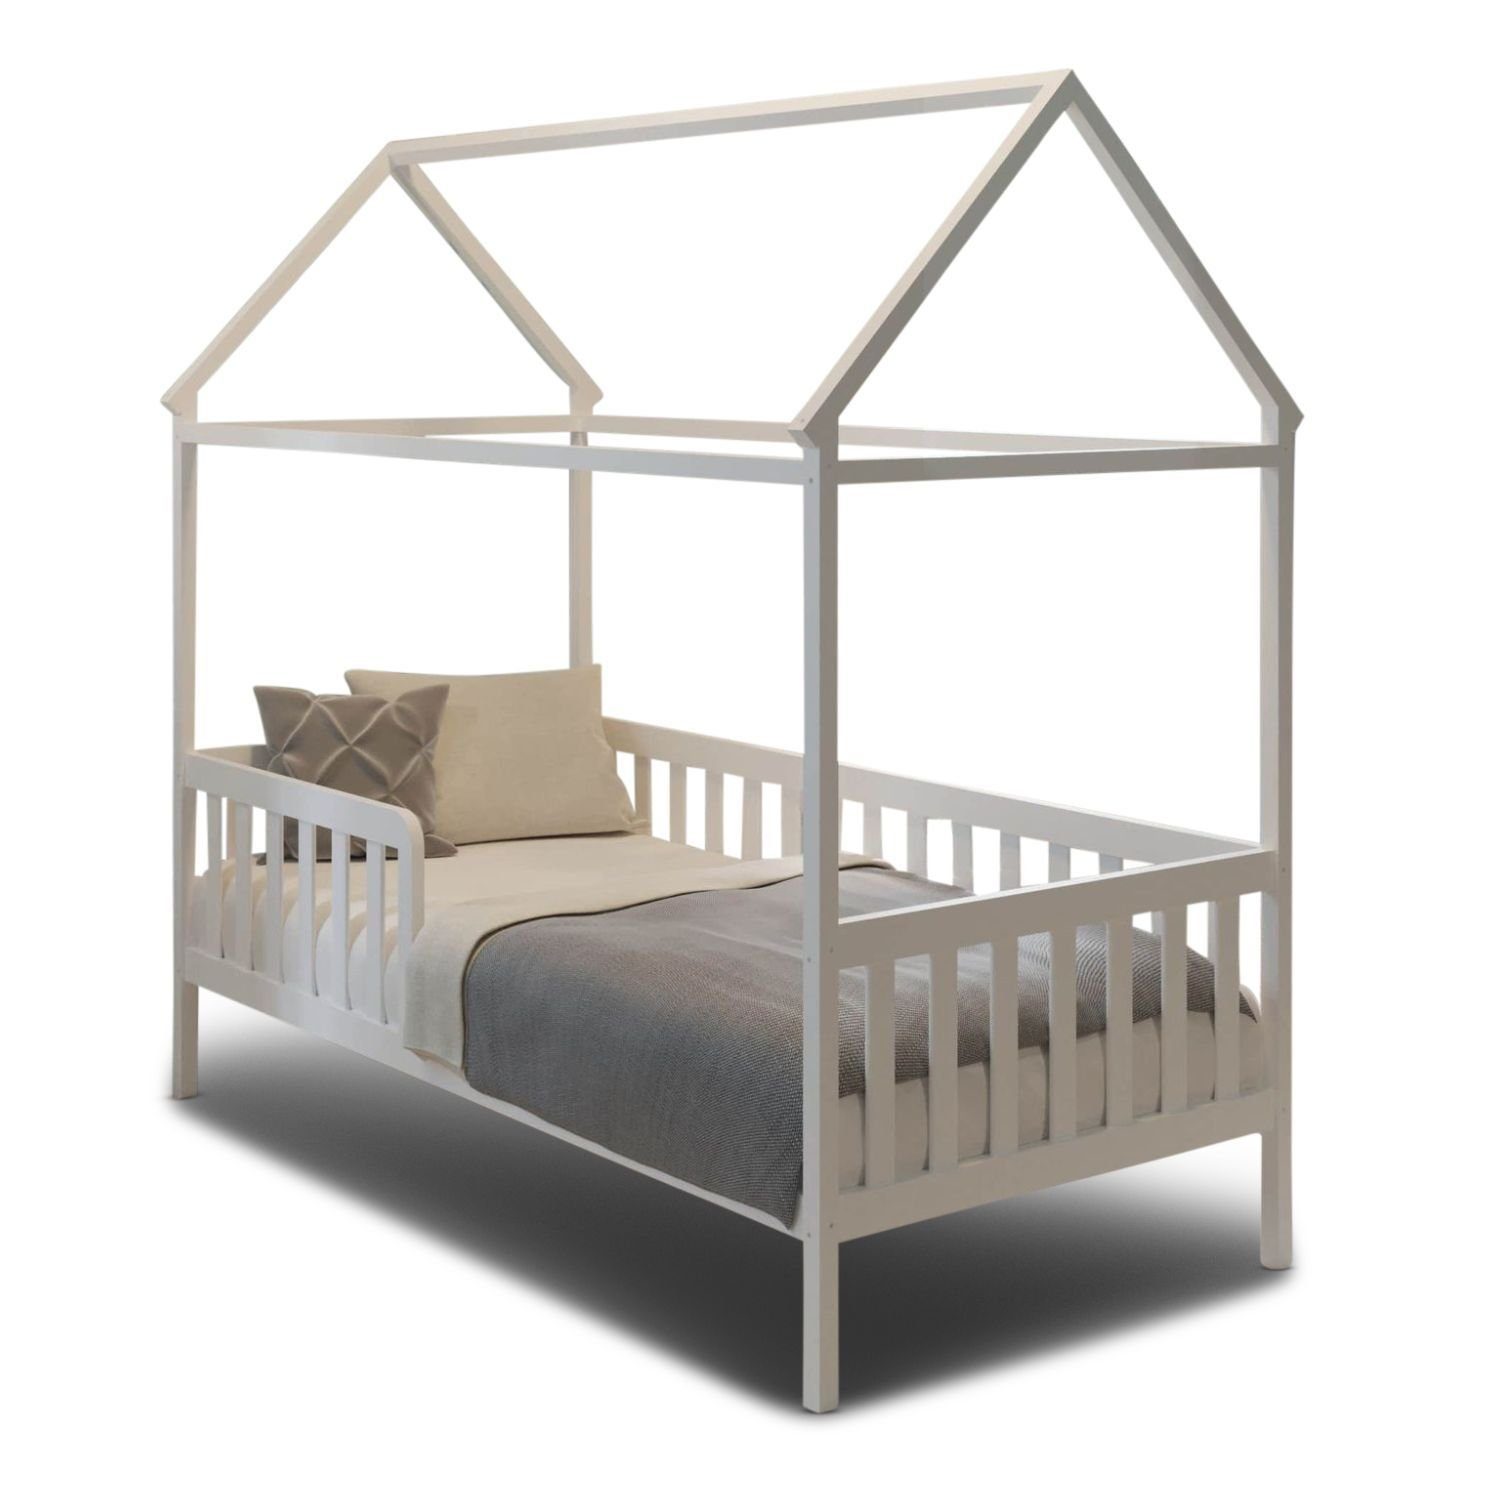 Coemo Kinderbett, Hausbett HOME 80x160 cm, mit Dachgestell und Rausfallschutz